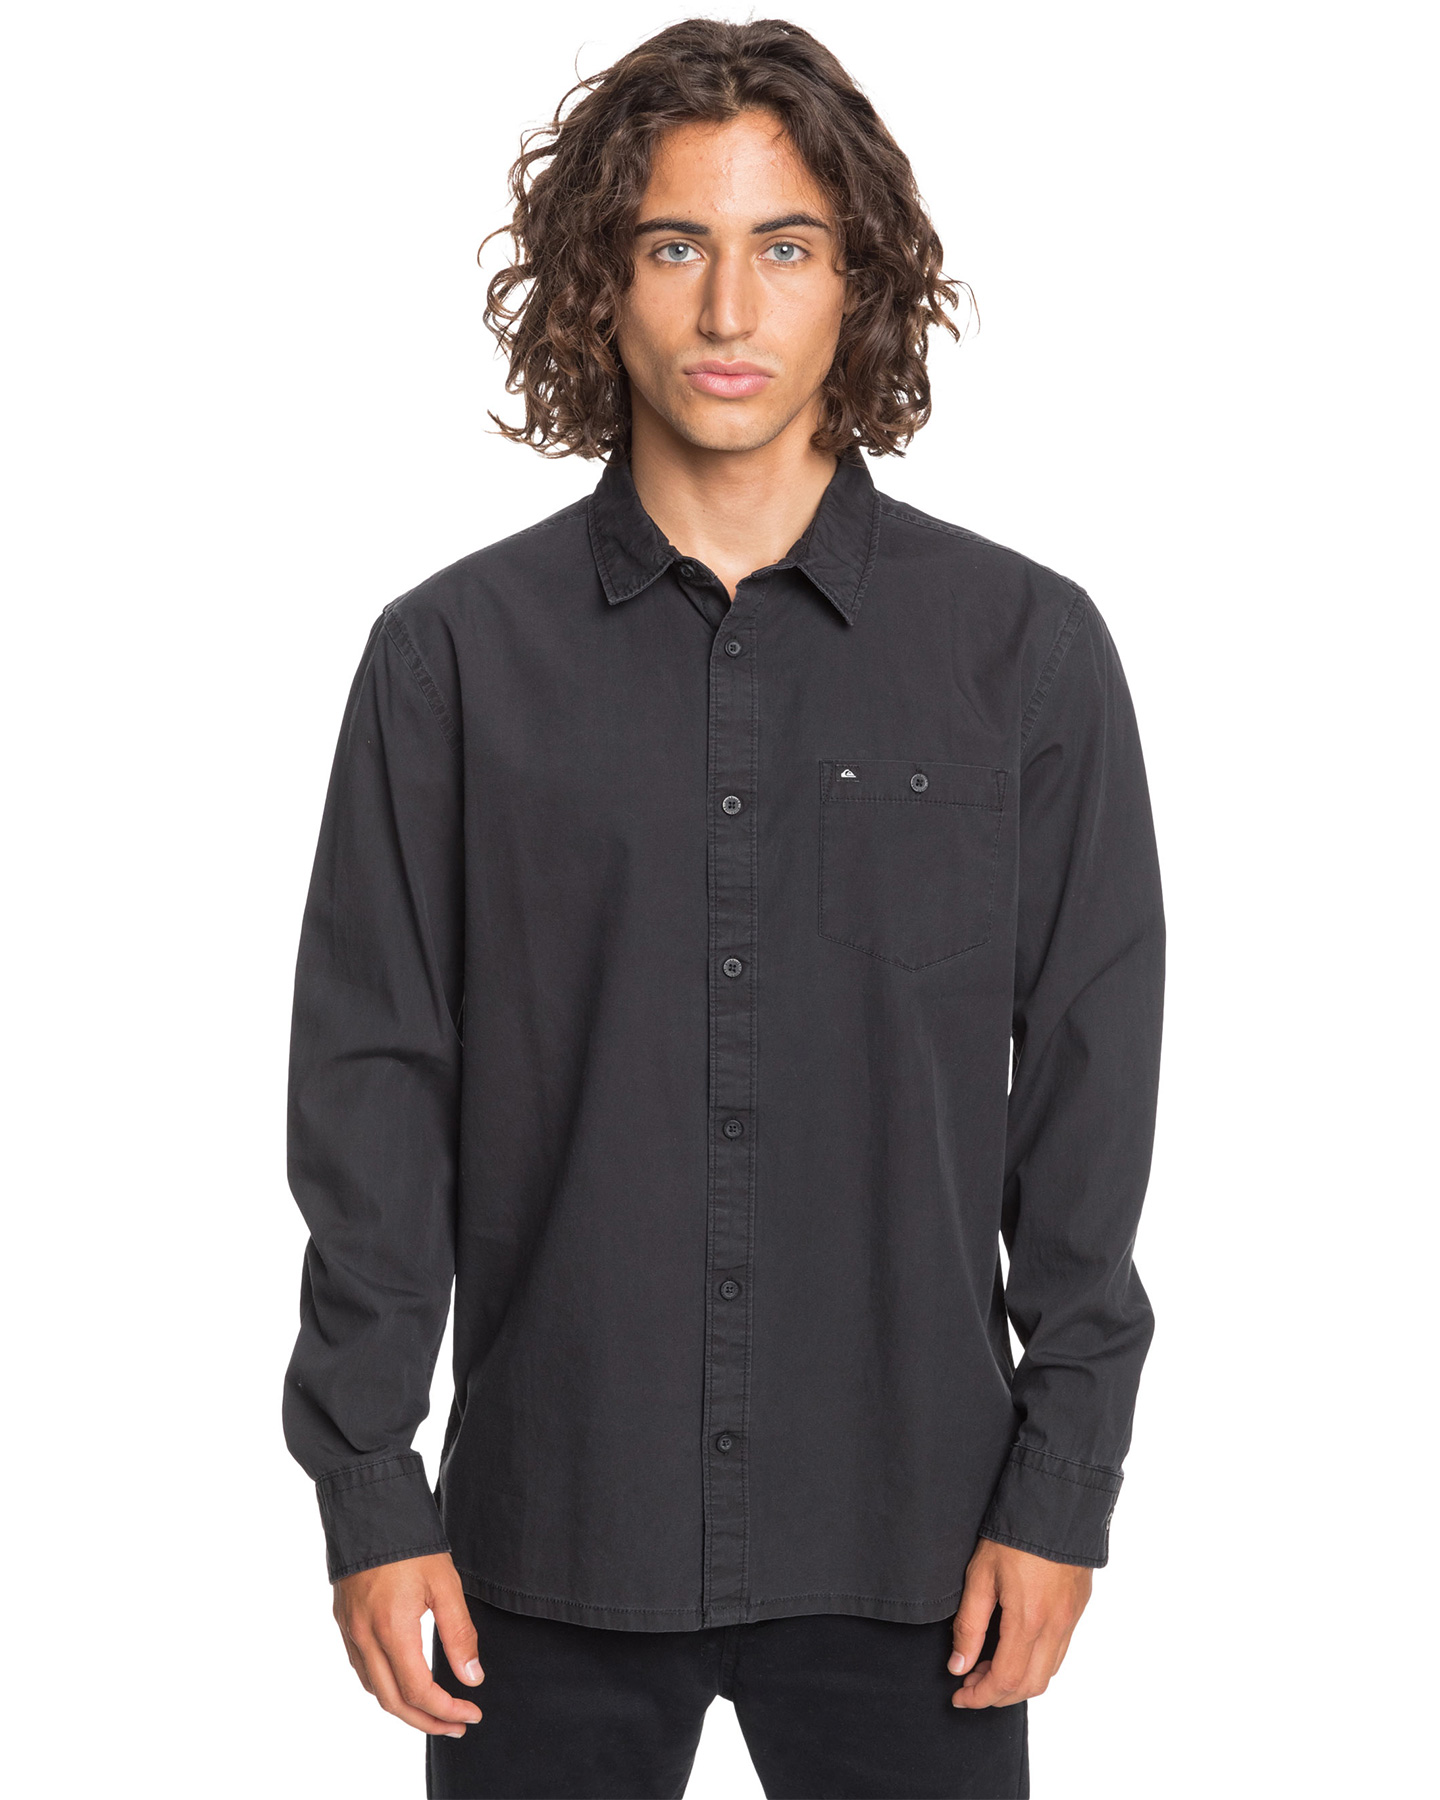 Quiksilver Mens Taxer Long Sleeve Shirt - Black | SurfStitch